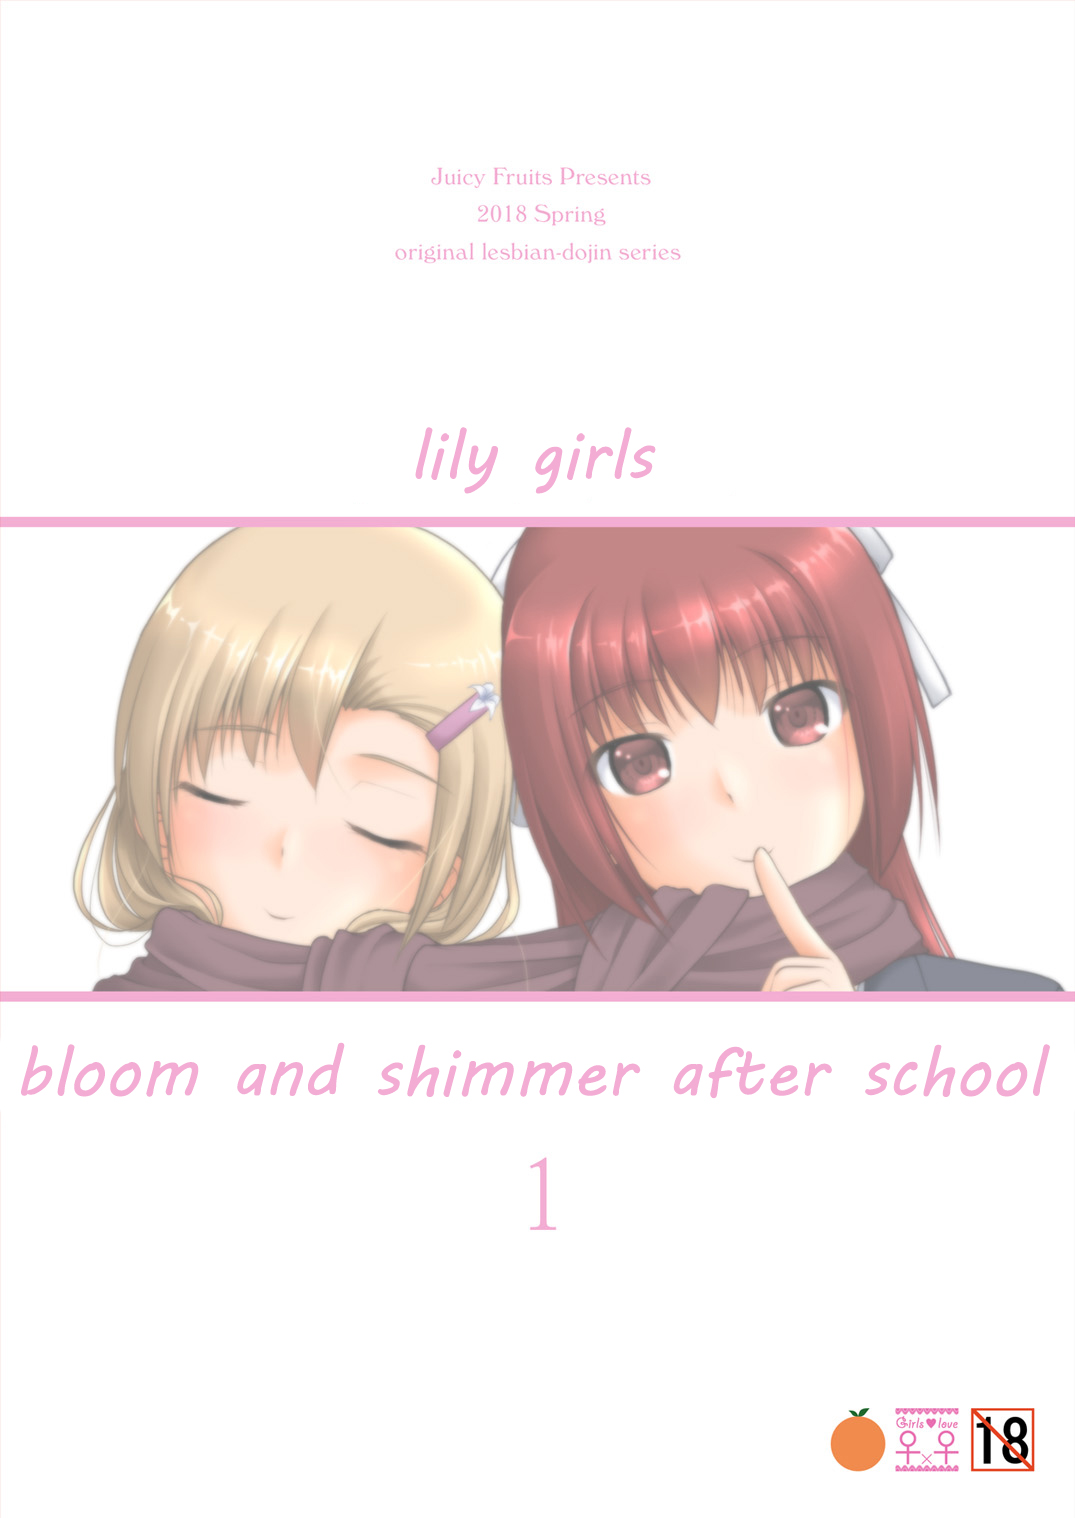 Yurikko wa Houkago ni Yurameki Hanasaku 1 | lily girls bloom and shimmer after school 1